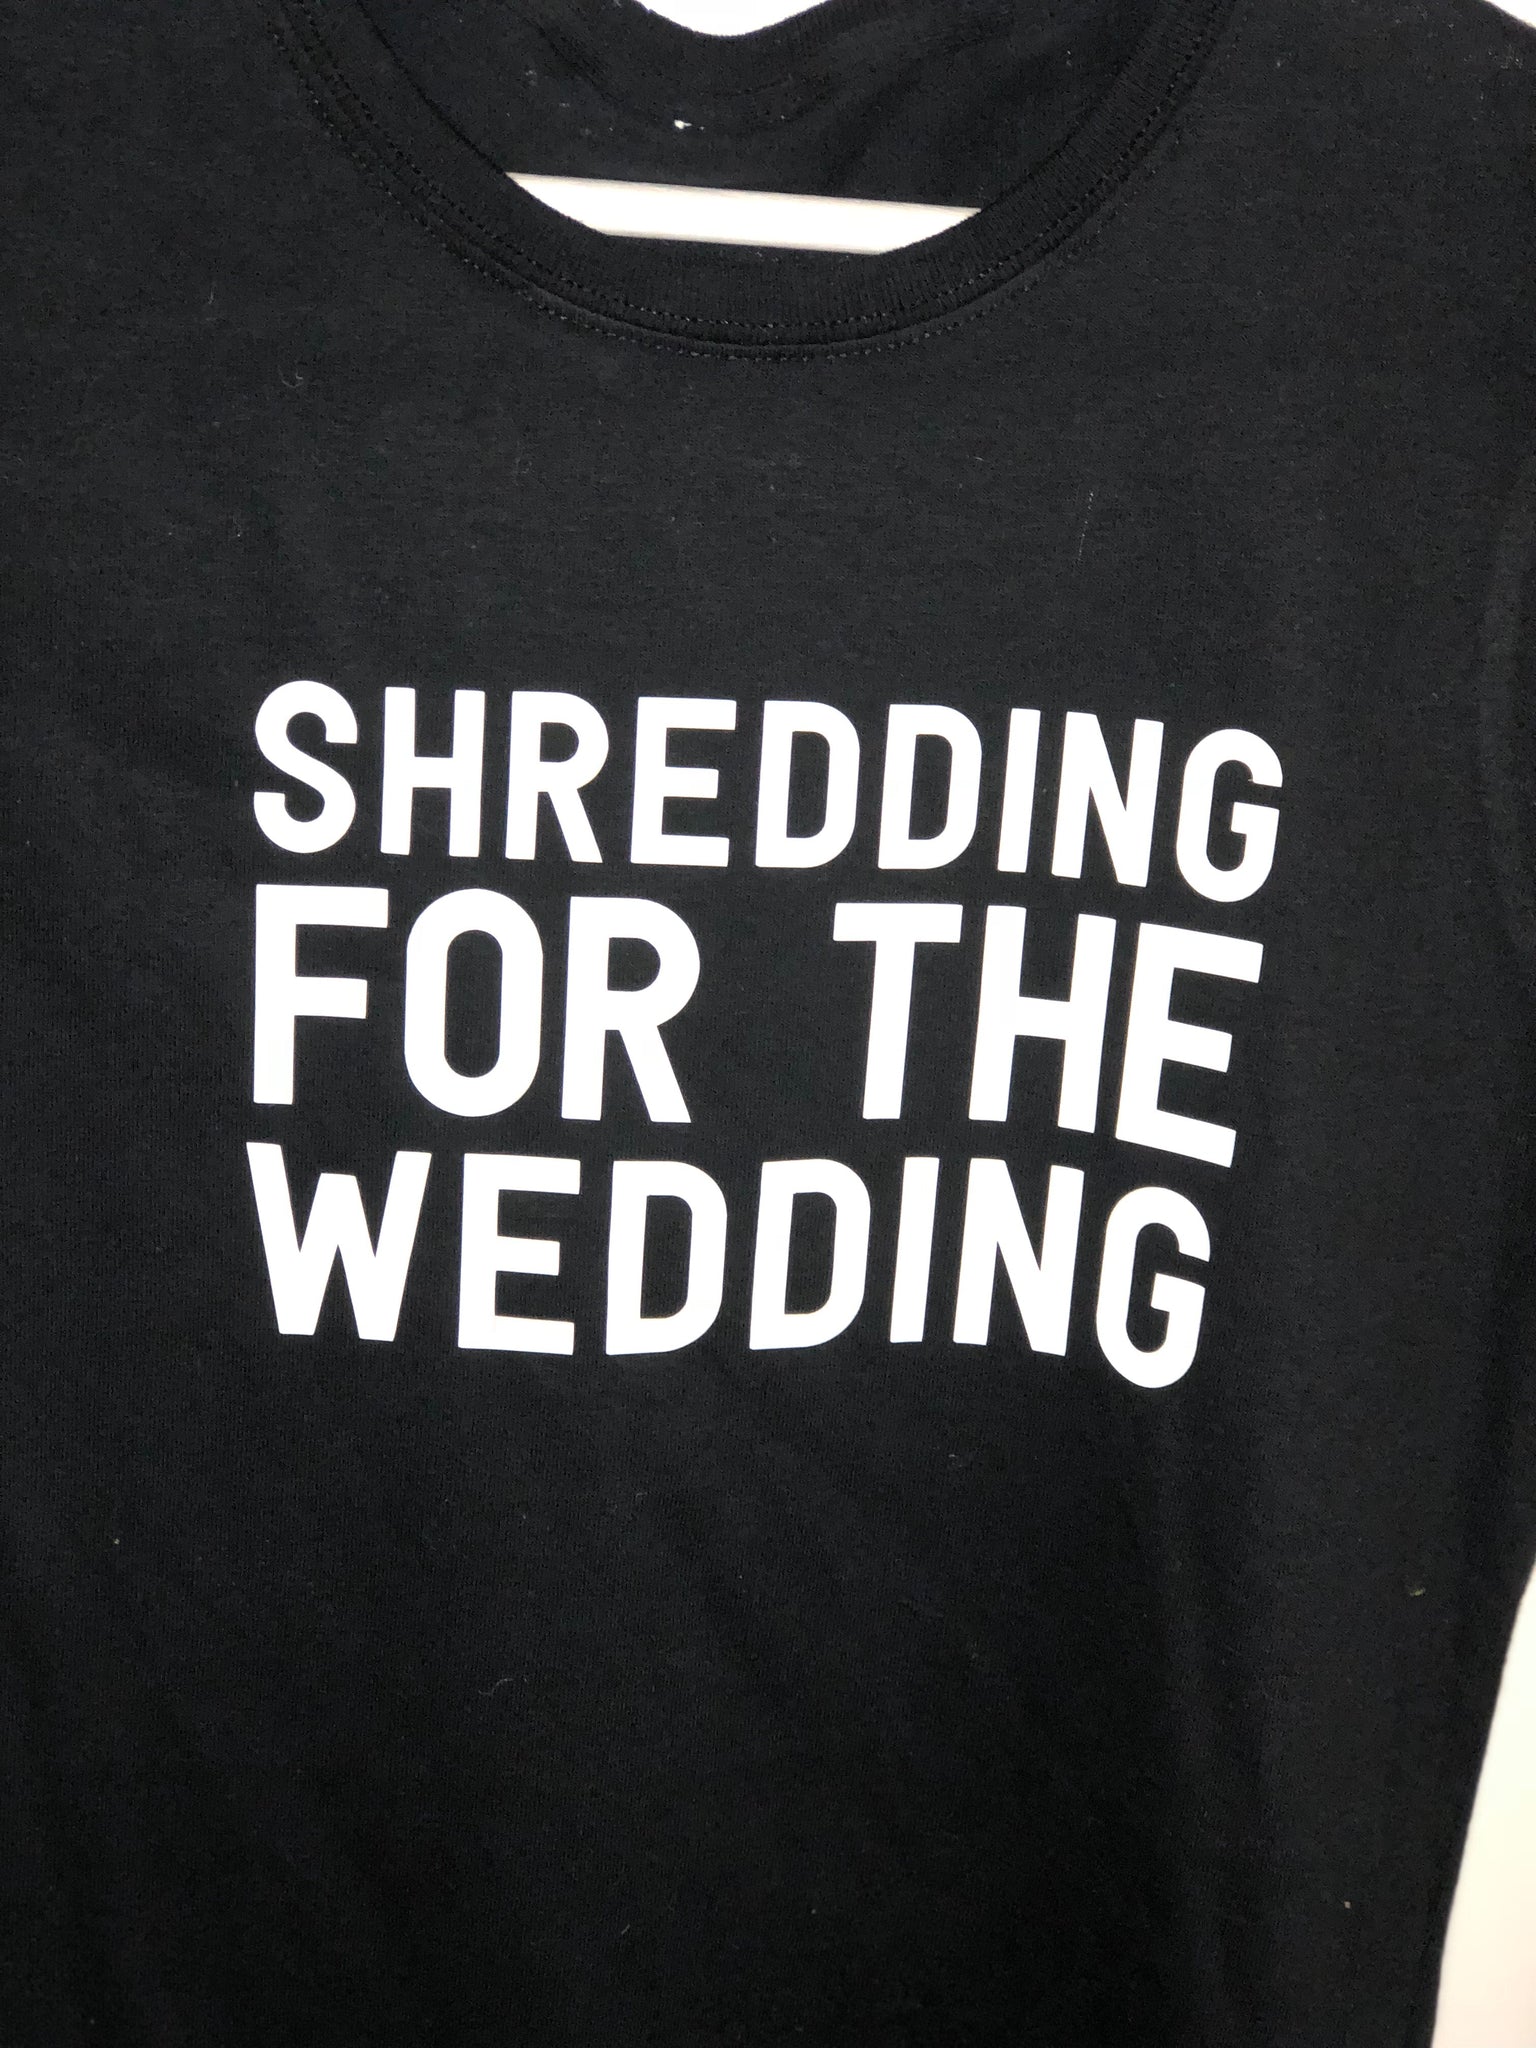 Shredding for the wedding tshirt